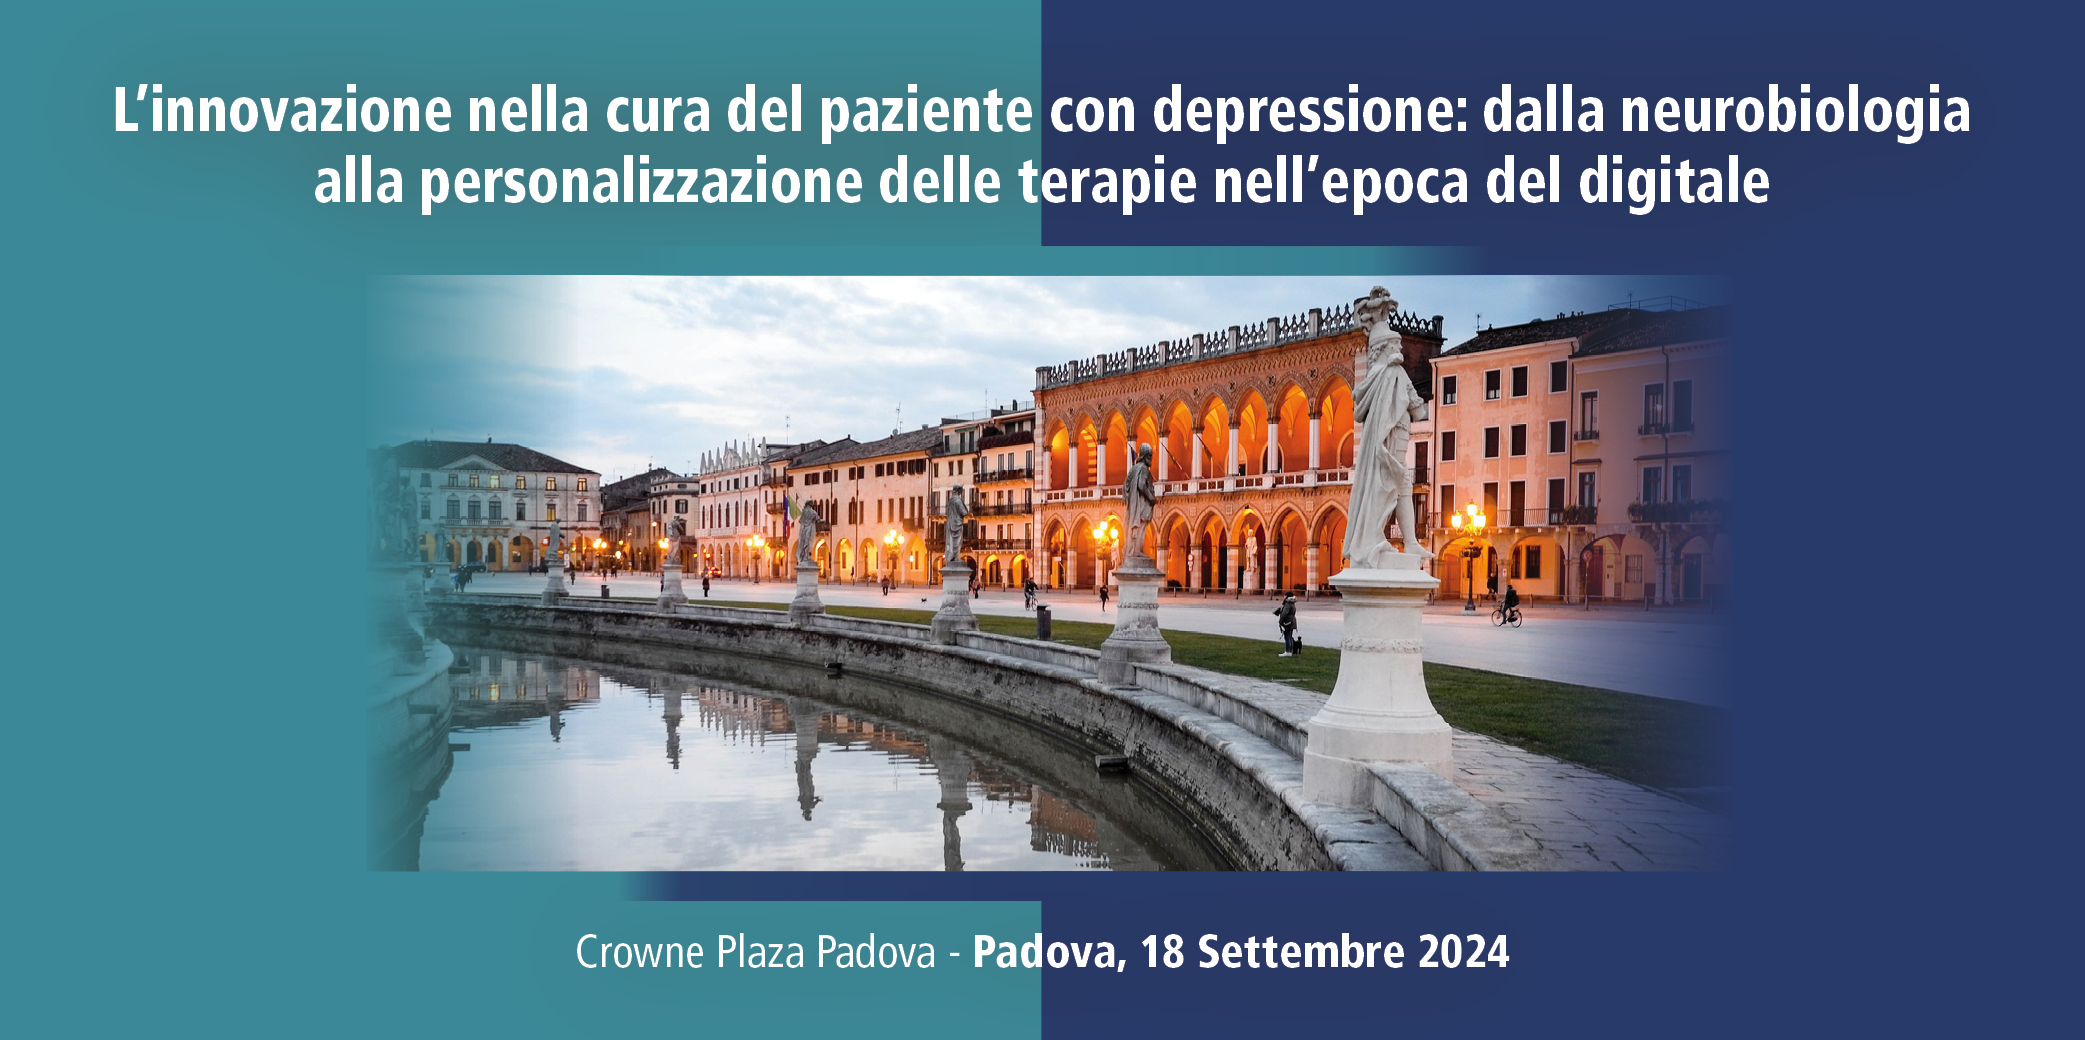 L’INNOVAZIONE NELLA CURA DEL PAZIENTE CON DEPRESSIONE: DALLA NEUROBIOLOGIA ALLA PERSONALIZZAZIONE DELLE TERAPIE NELL’EPOCA DEL DIGITALE – Padova, 18 Settembre 2024